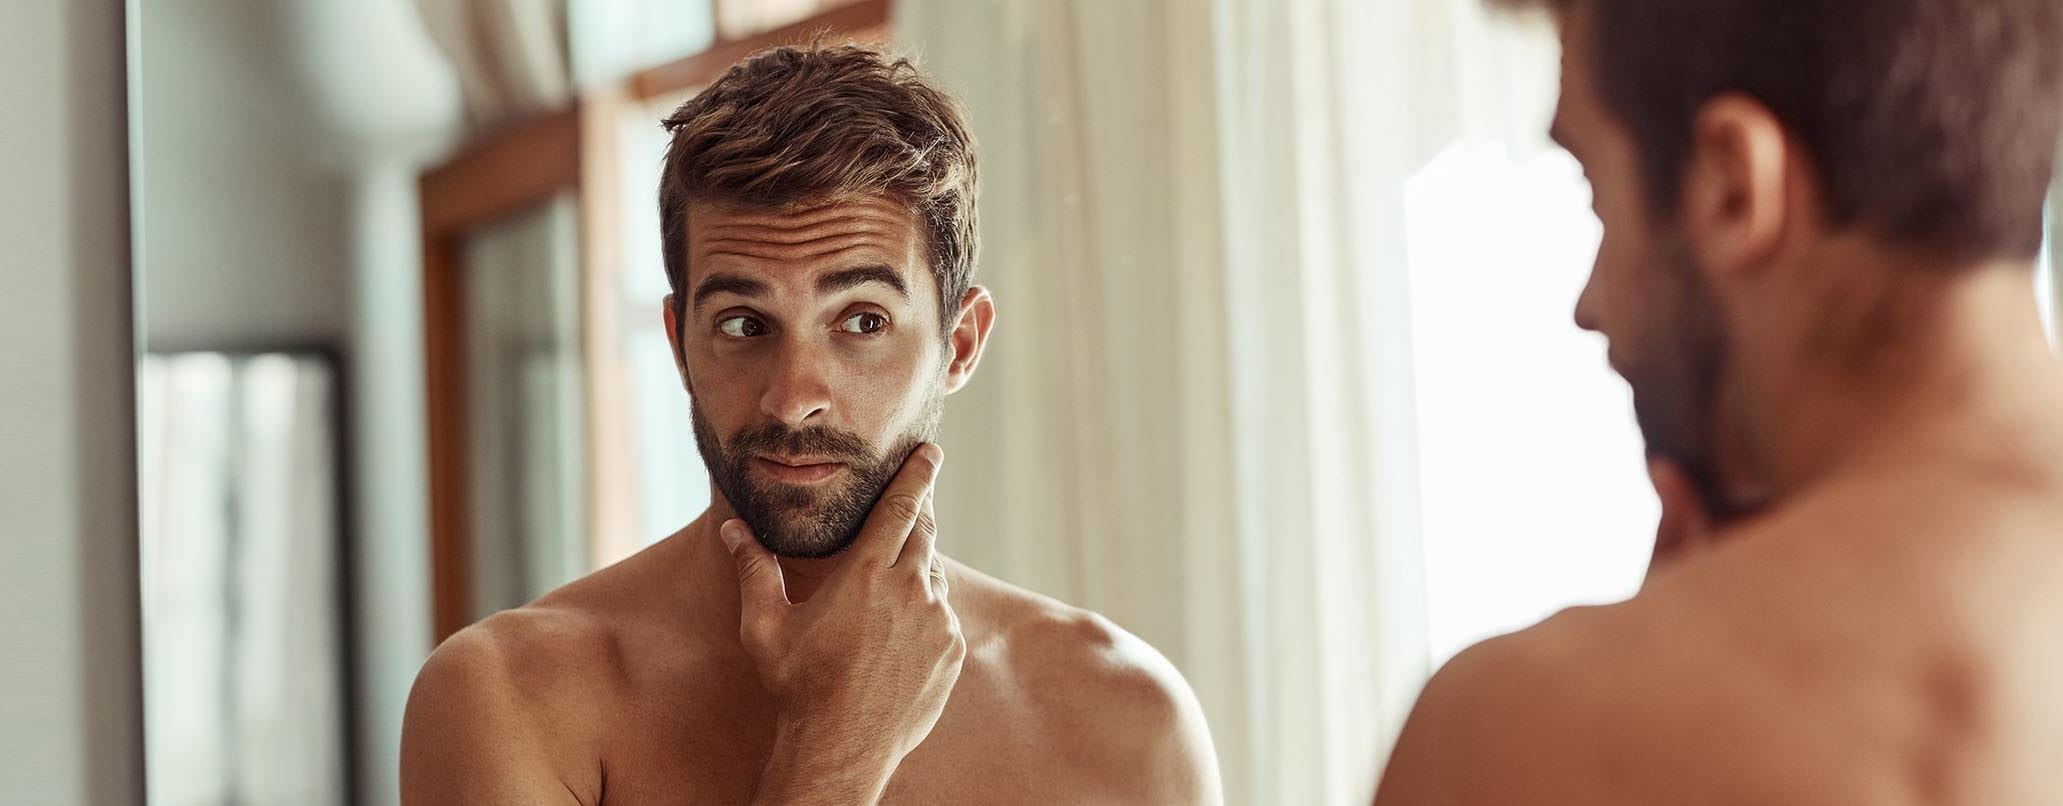 Bart pflegen und in Form bringen in 5 Schritten Header